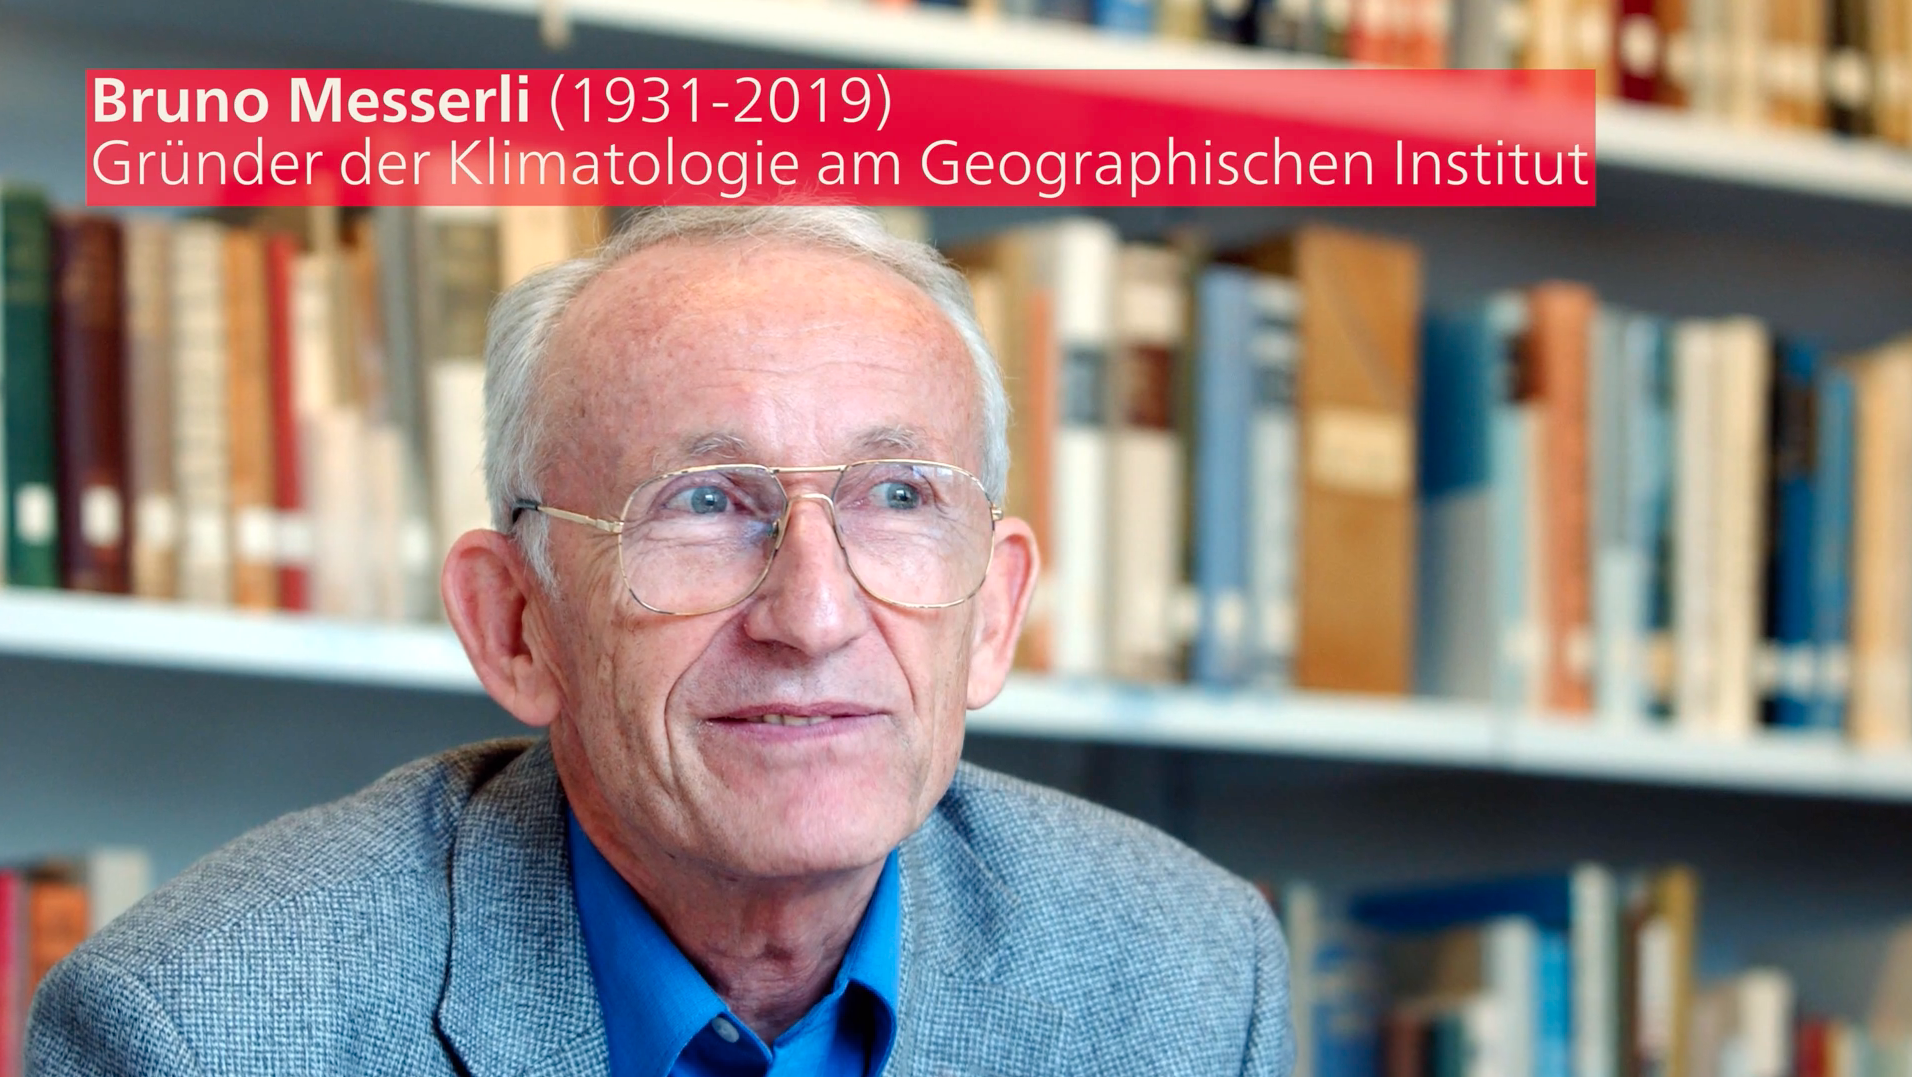 Prof. Dr. Bruno Messerli (1931-2019), Gründer der Klimatologie am Geographischen Institut der Universität Bern. Bild: Béatrice Devènes